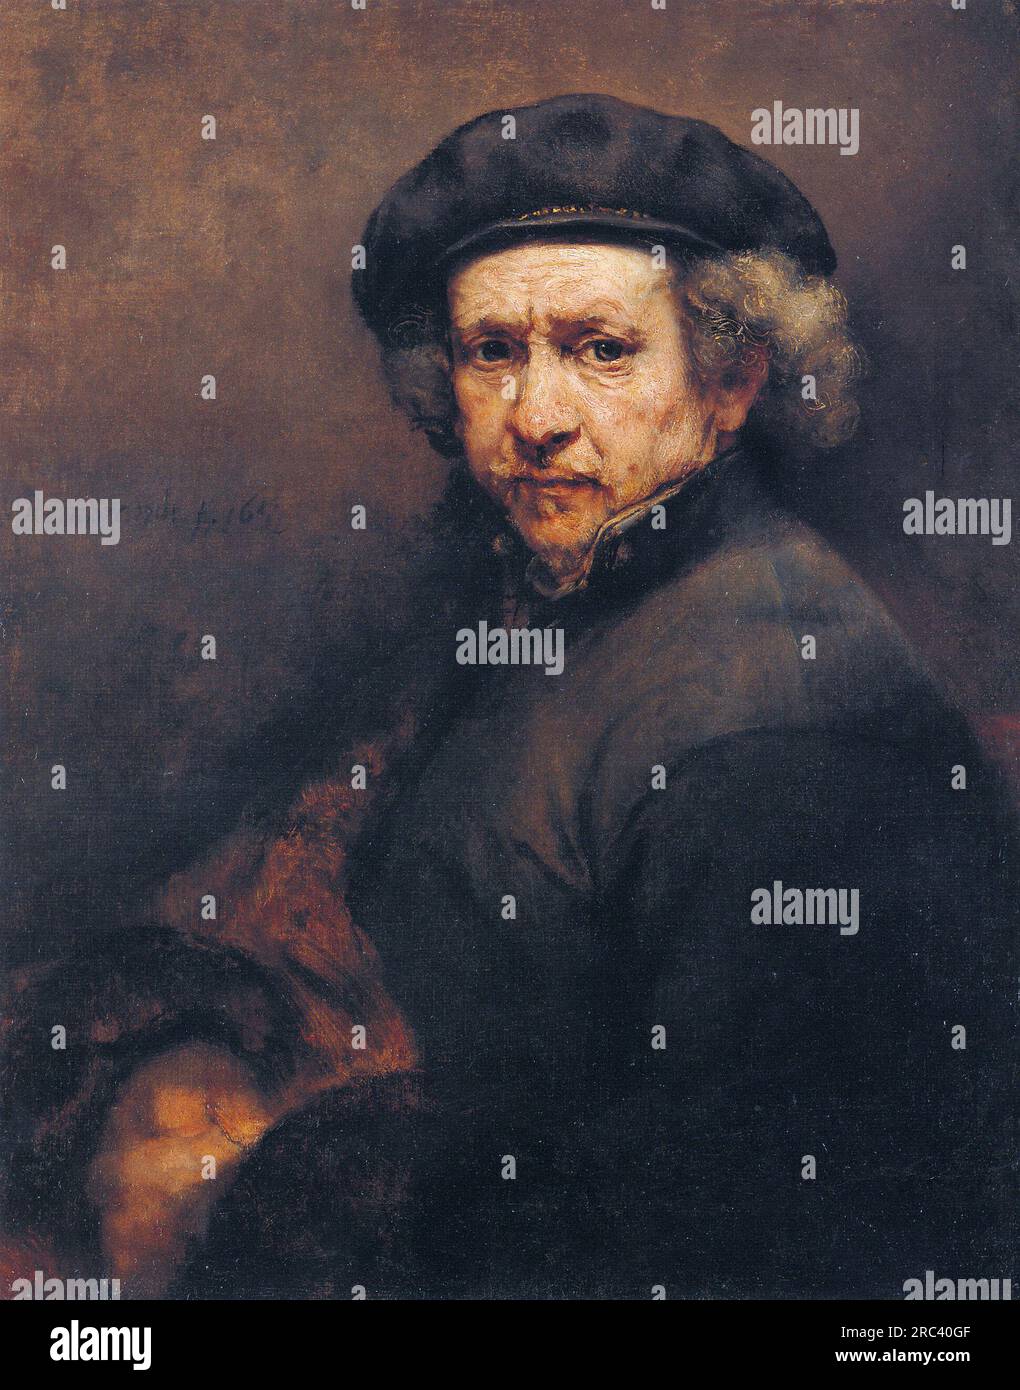 Autoritratto 1659 di Rembrandt Foto Stock